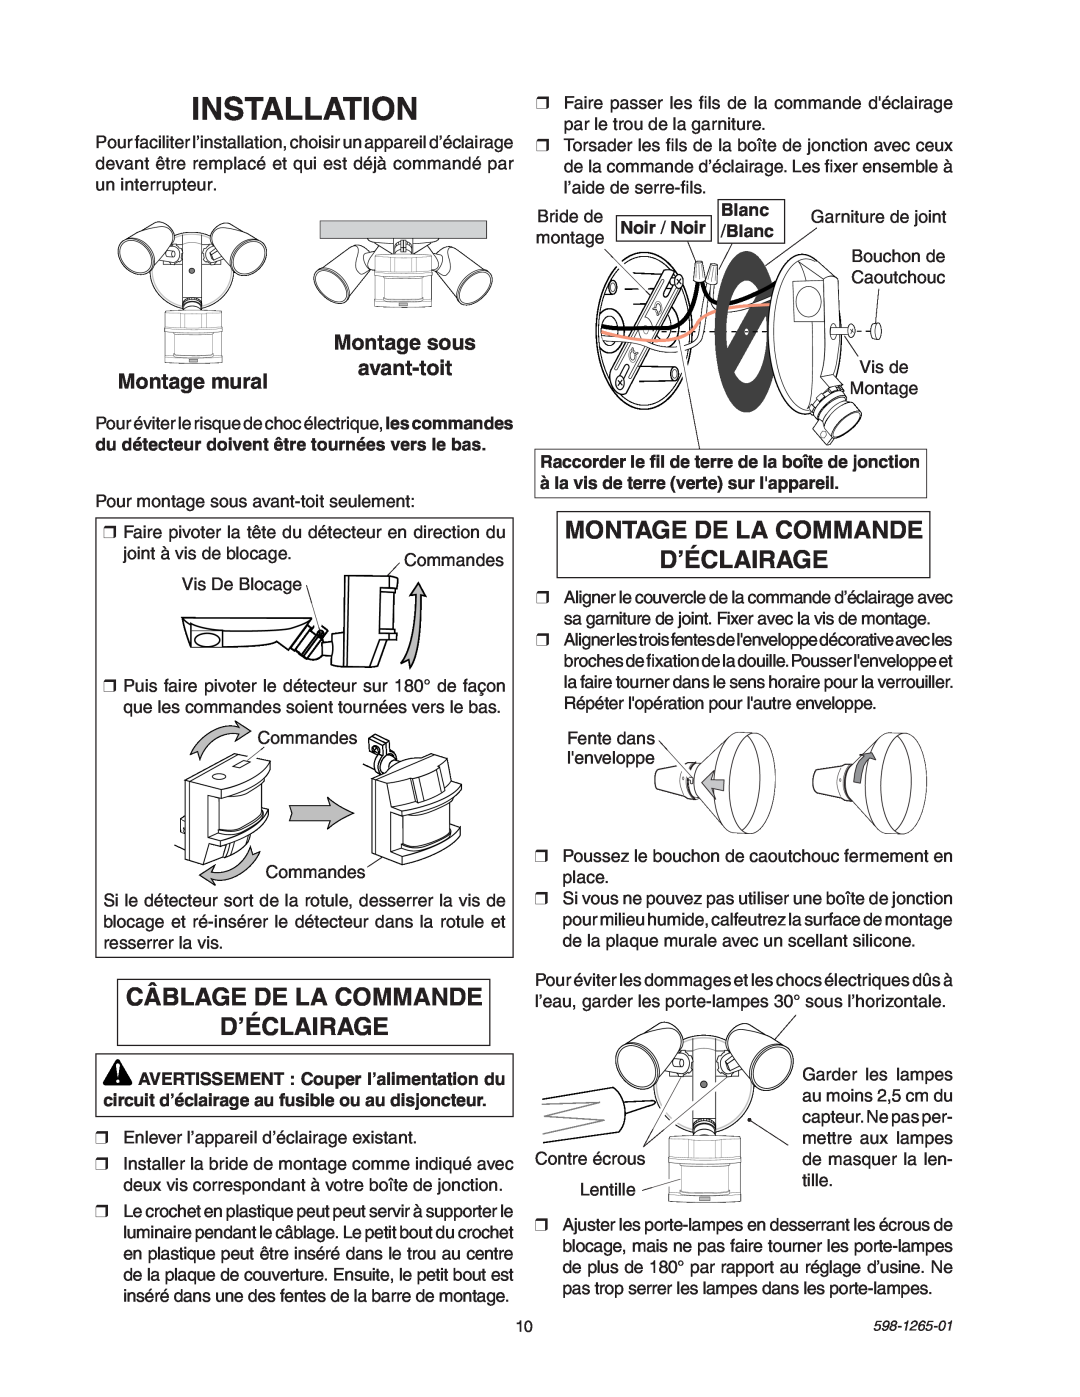 Heath Zenith SL-5412 manual Câblage De La Commande D’Éclairage, Montage De La Commande D’Éclairage, Installation 